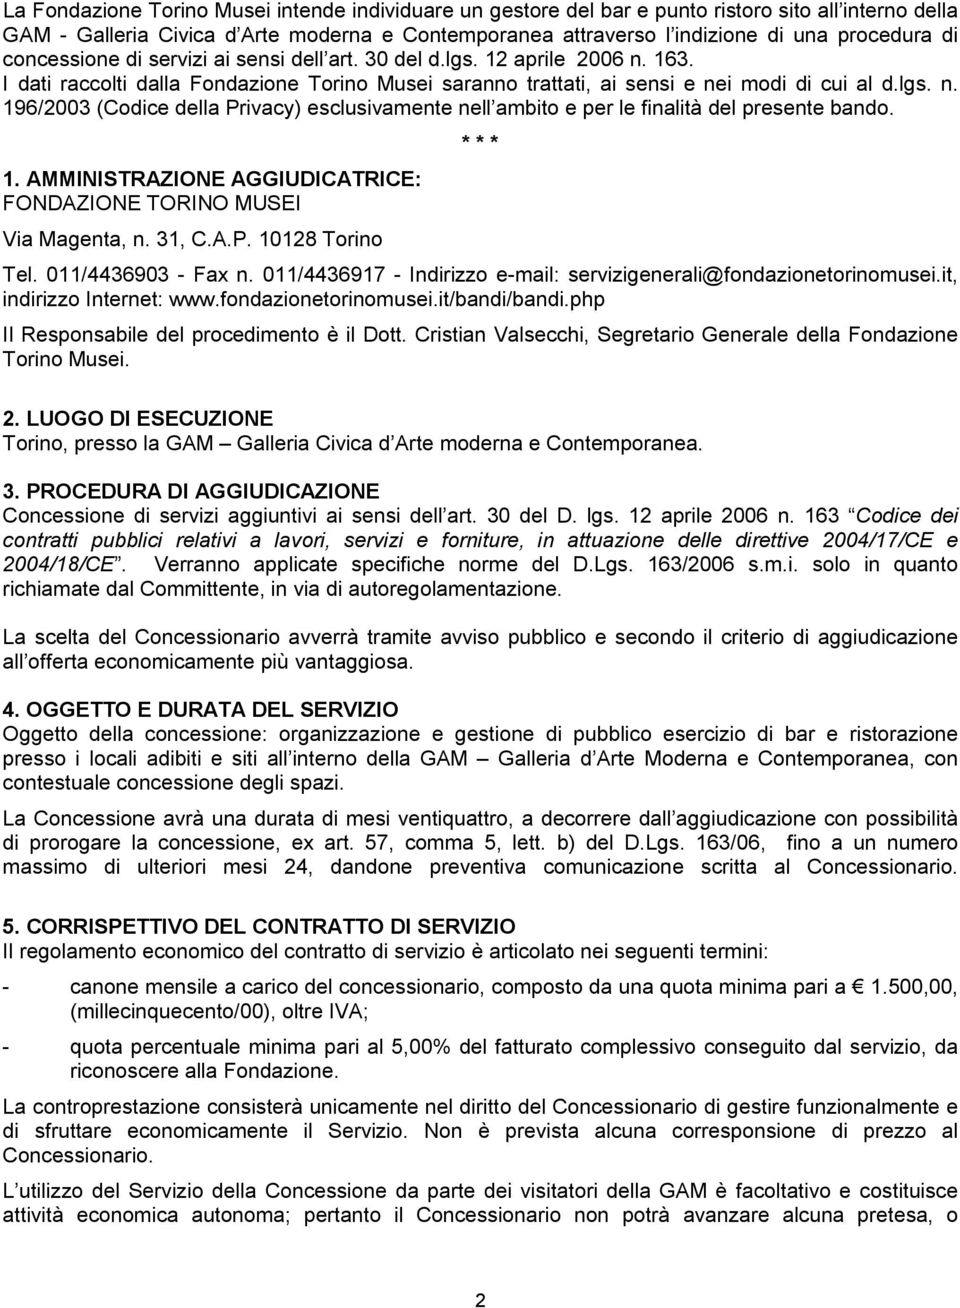 1. AMMINISTRAZIONE AGGIUDICATRICE: FONDAZIONE TORINO MUSEI Via Magenta, n. 31, C.A.P. 10128 Torino * * * Tel. 011/4436903 - Fax n.